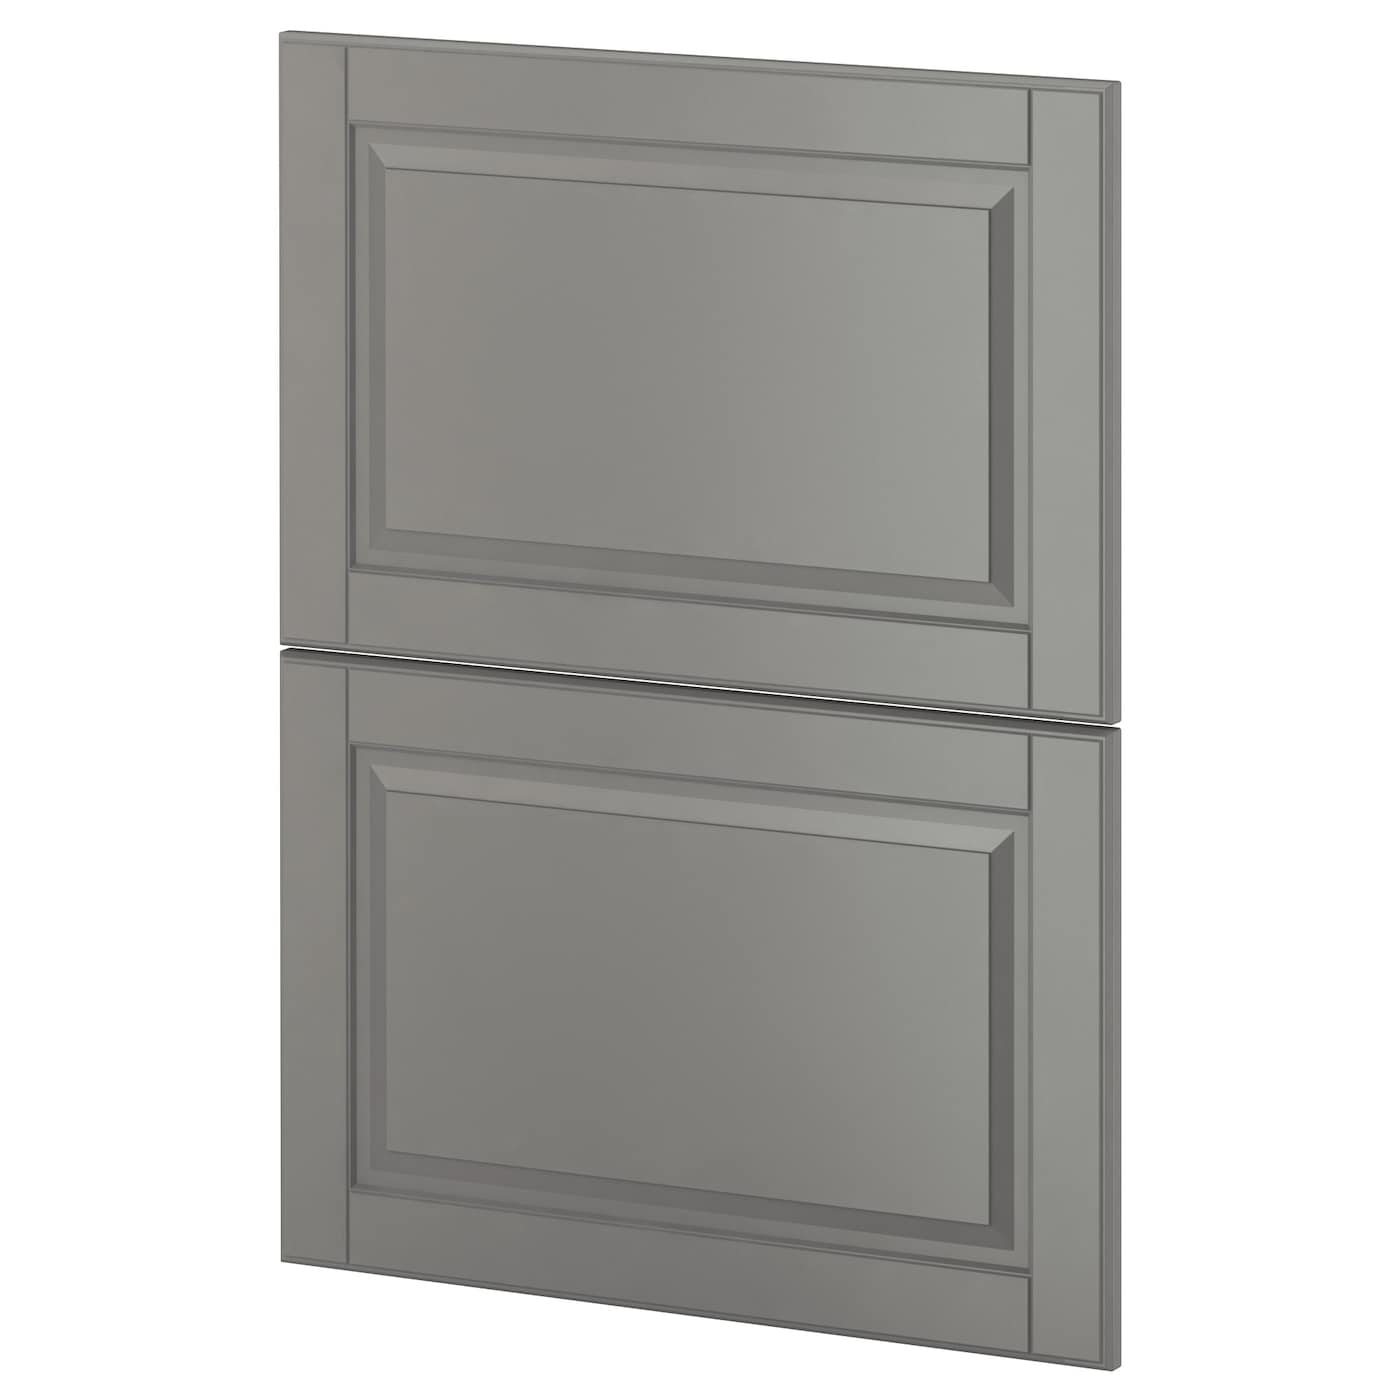 Накладная панель для посудомоечной машины - IKEA METOD, 80х60 см, серый, МЕТОД ИКЕА